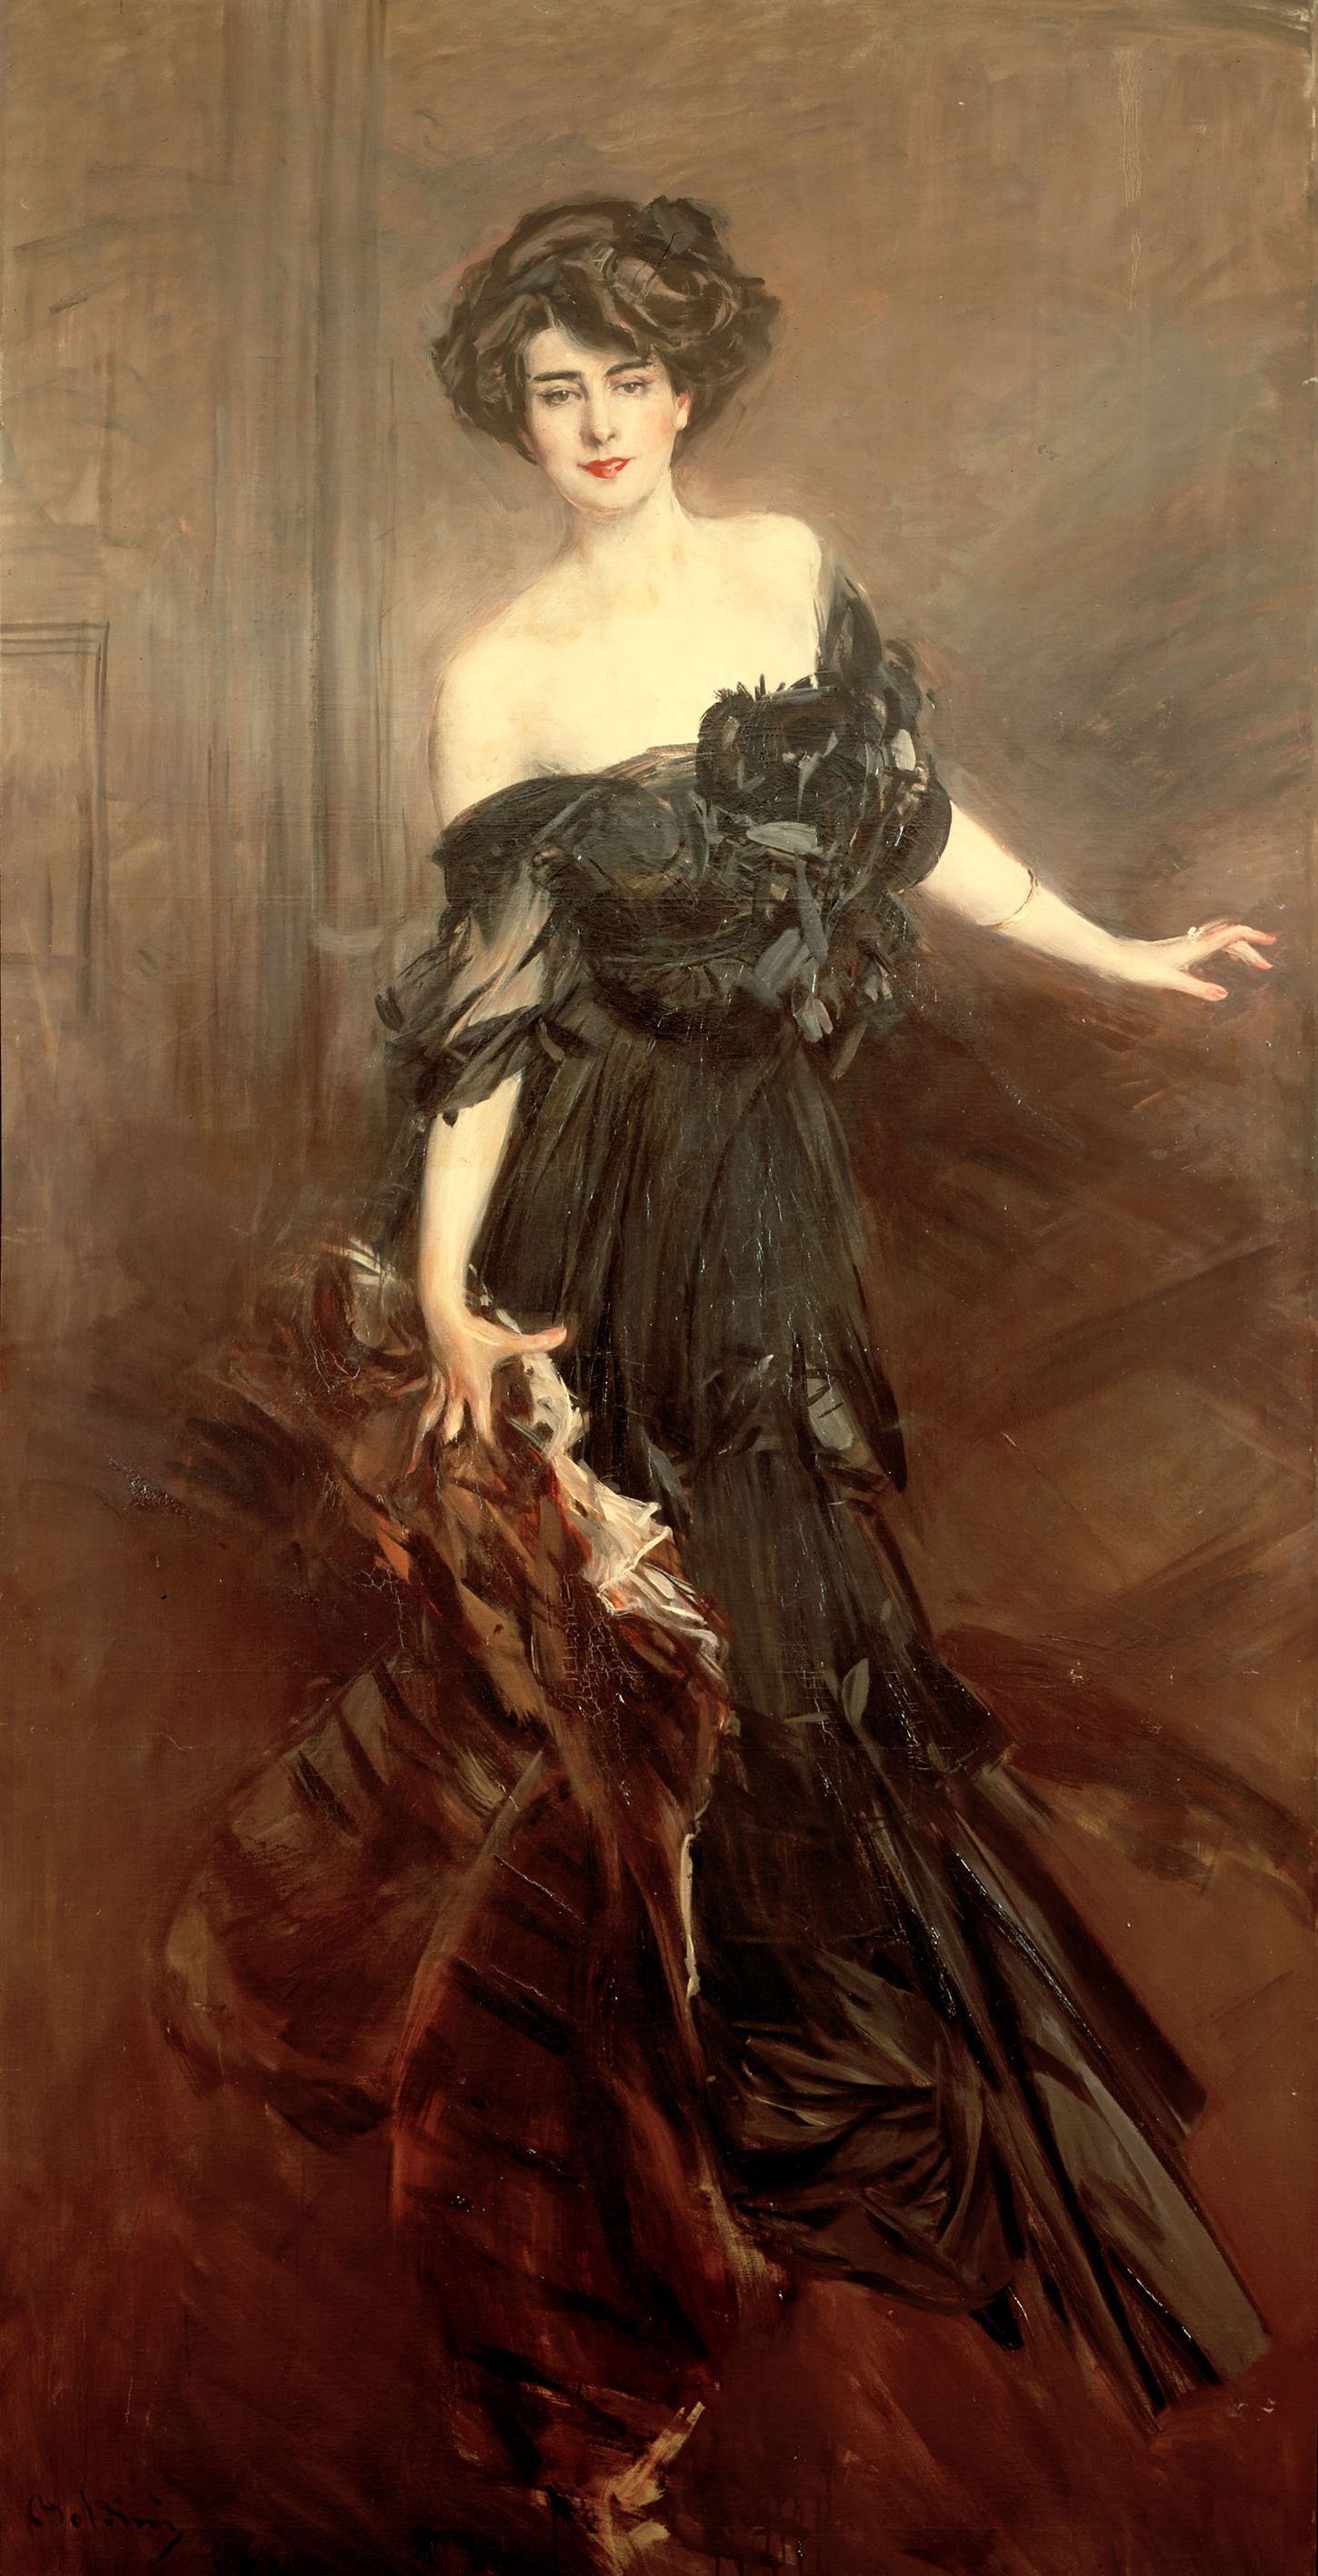 Giovanni Boldini, Ritratto di Mademoiselle De Nemidoff, 1908, olio su tela, 232x122cm, collezione privata